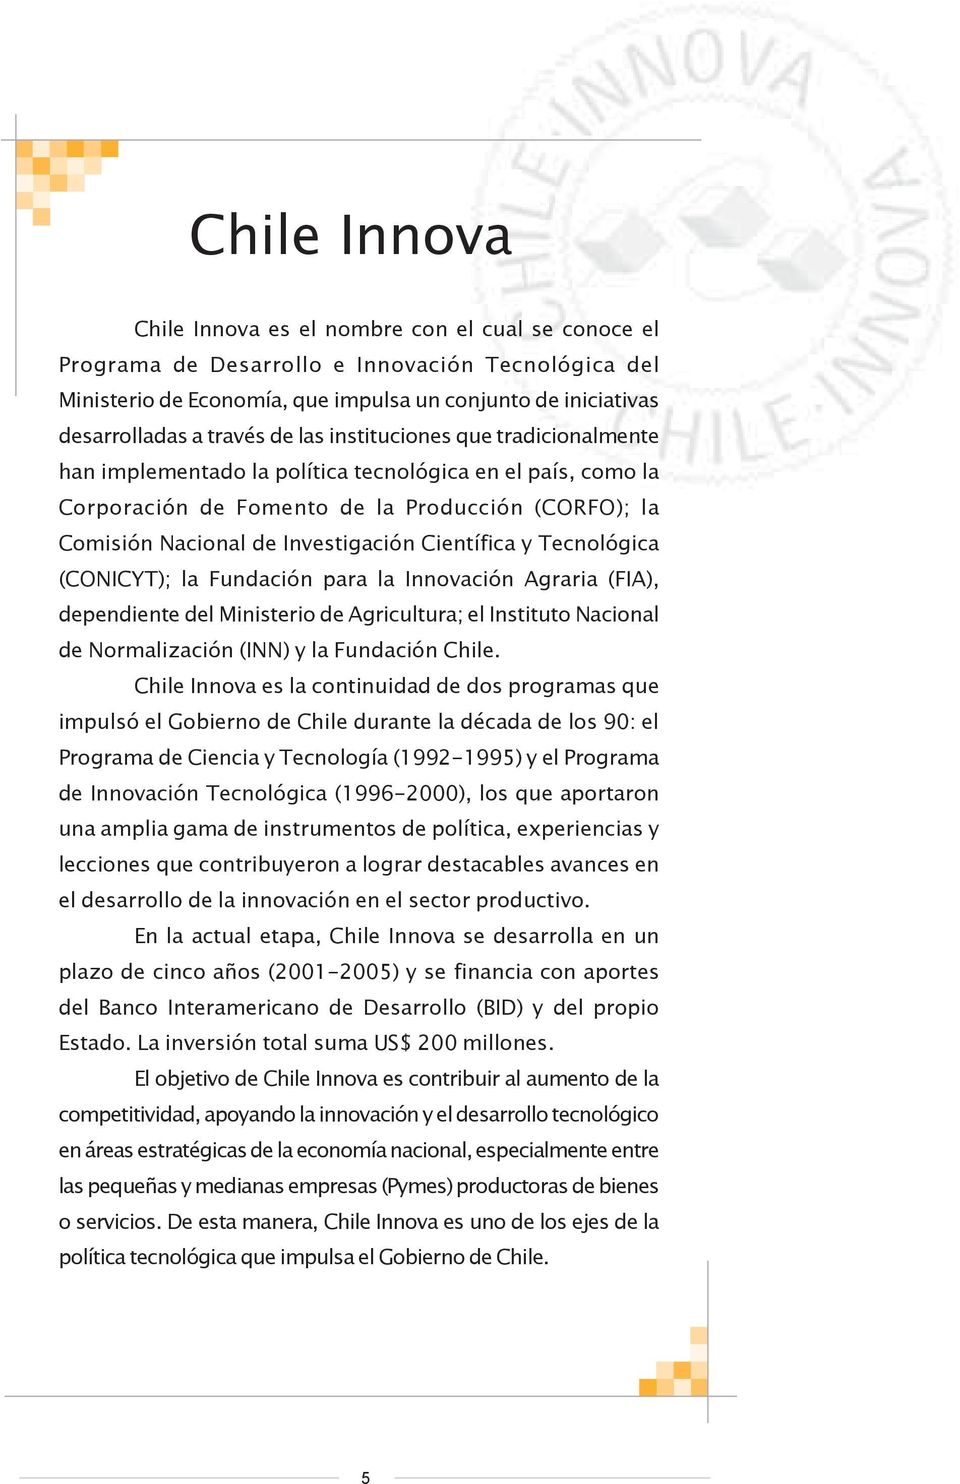 Científica y Tecnológica (CONICYT); la Fundación para la Innovación Agraria (FIA), dependiente del Ministerio de Agricultura; el Instituto Nacional de Normalización (INN) y la Fundación Chile.